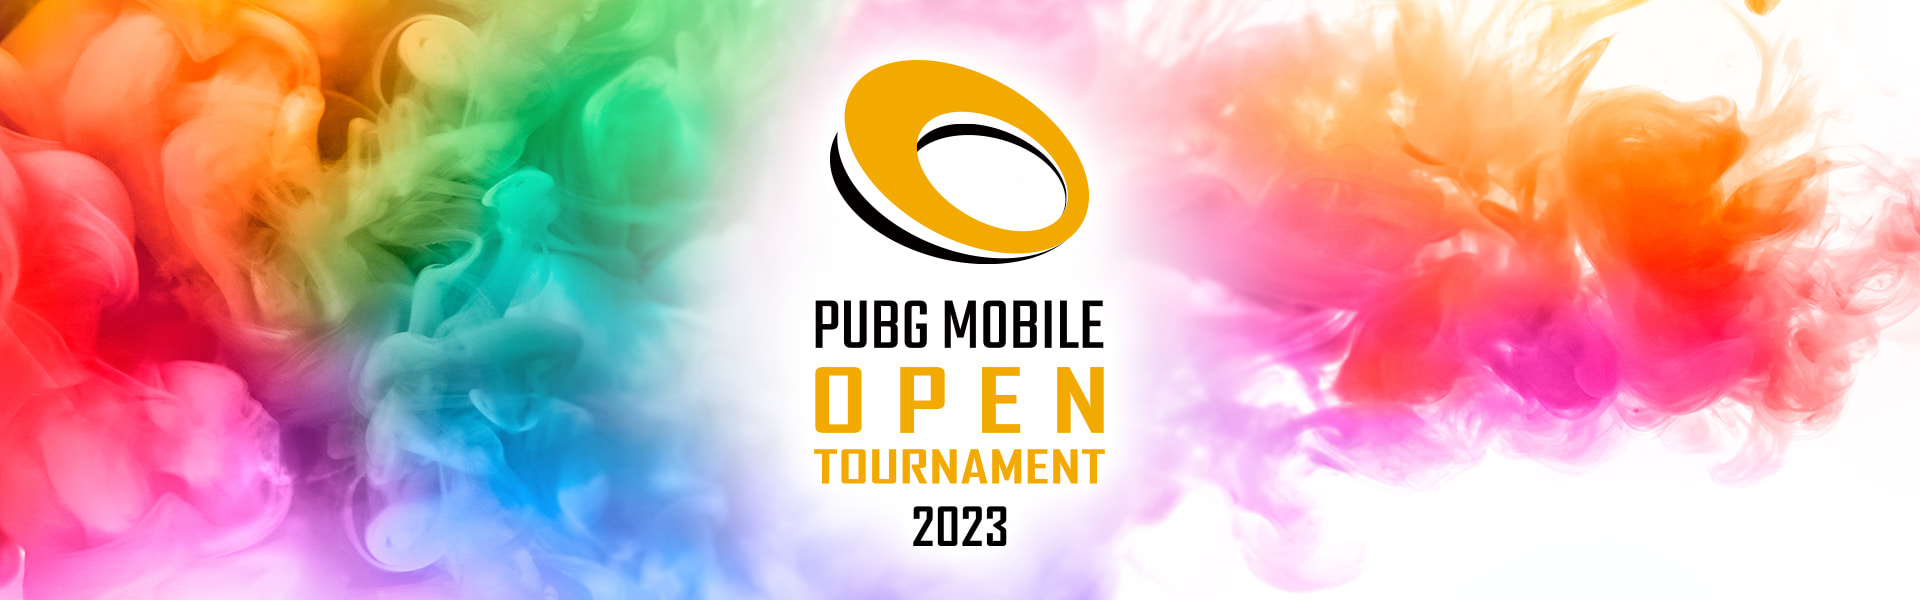 PUBG MOBILE OPEN TOURNAMENT 2023